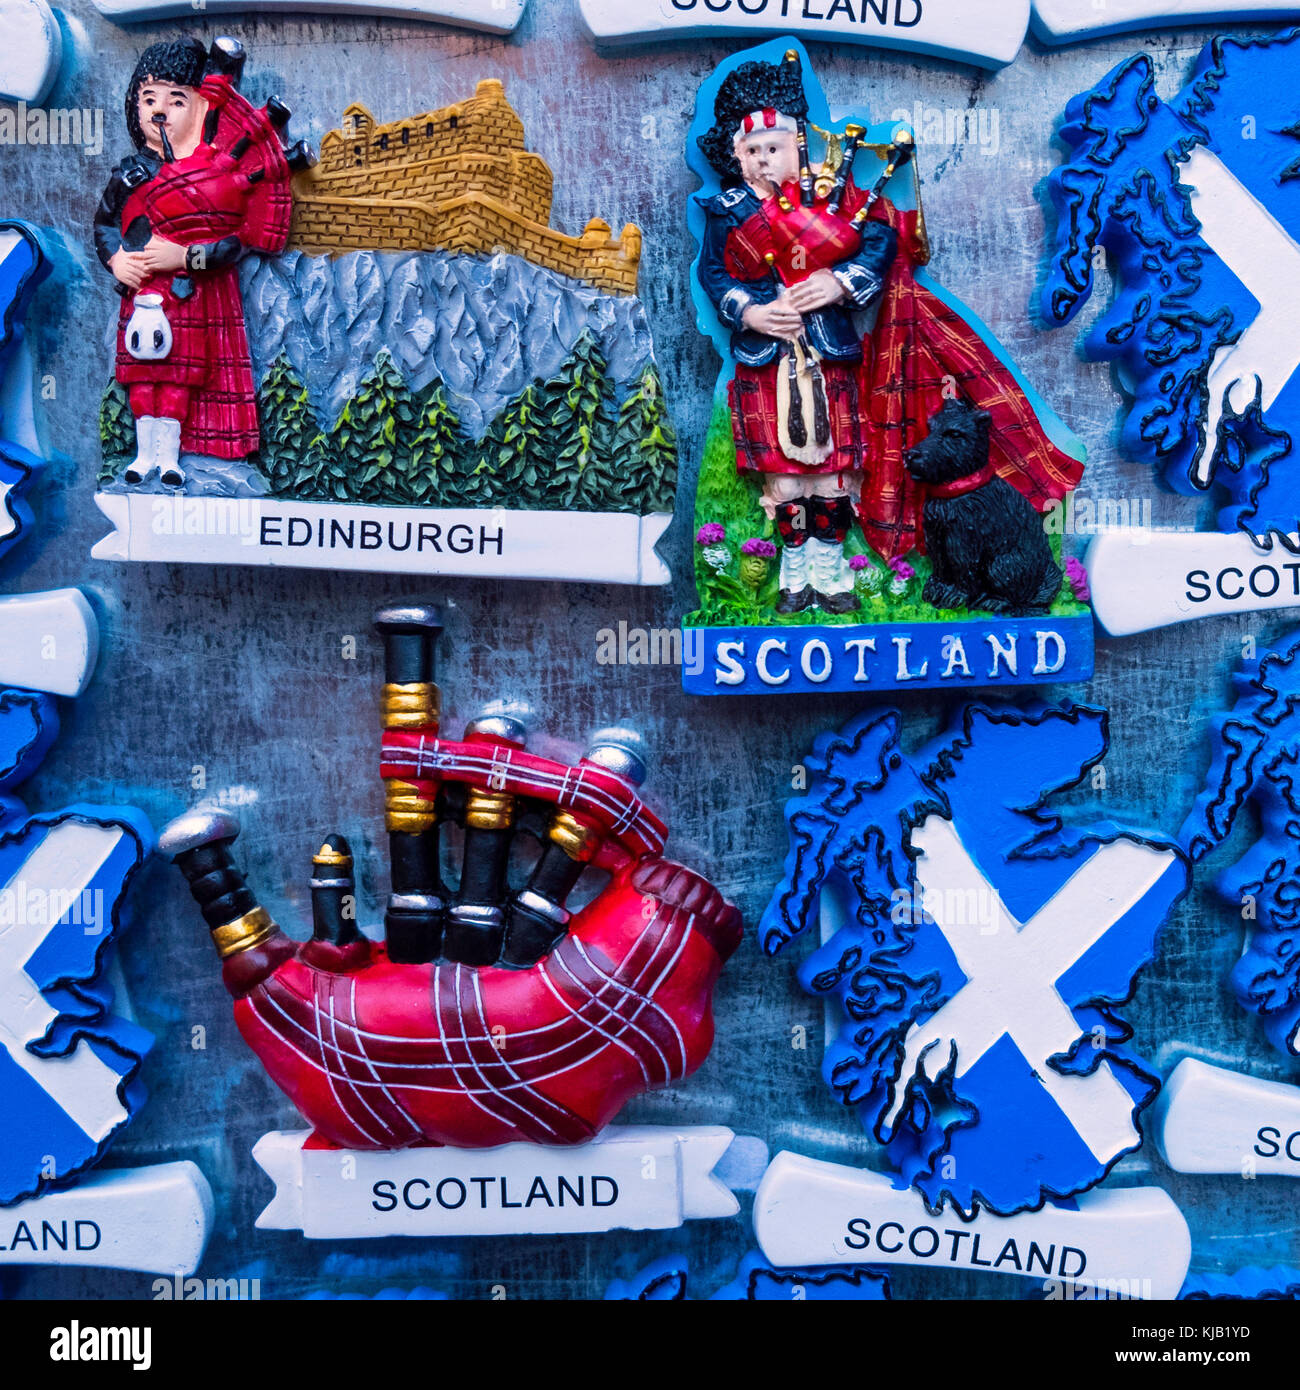 Touristische Kühlschrankmagnete mit schottischen Motiven zum Verkauf im Tourist Souvenir Shop in Edinburgh, Schottland, Vereinigtes Königreich. Stockfoto